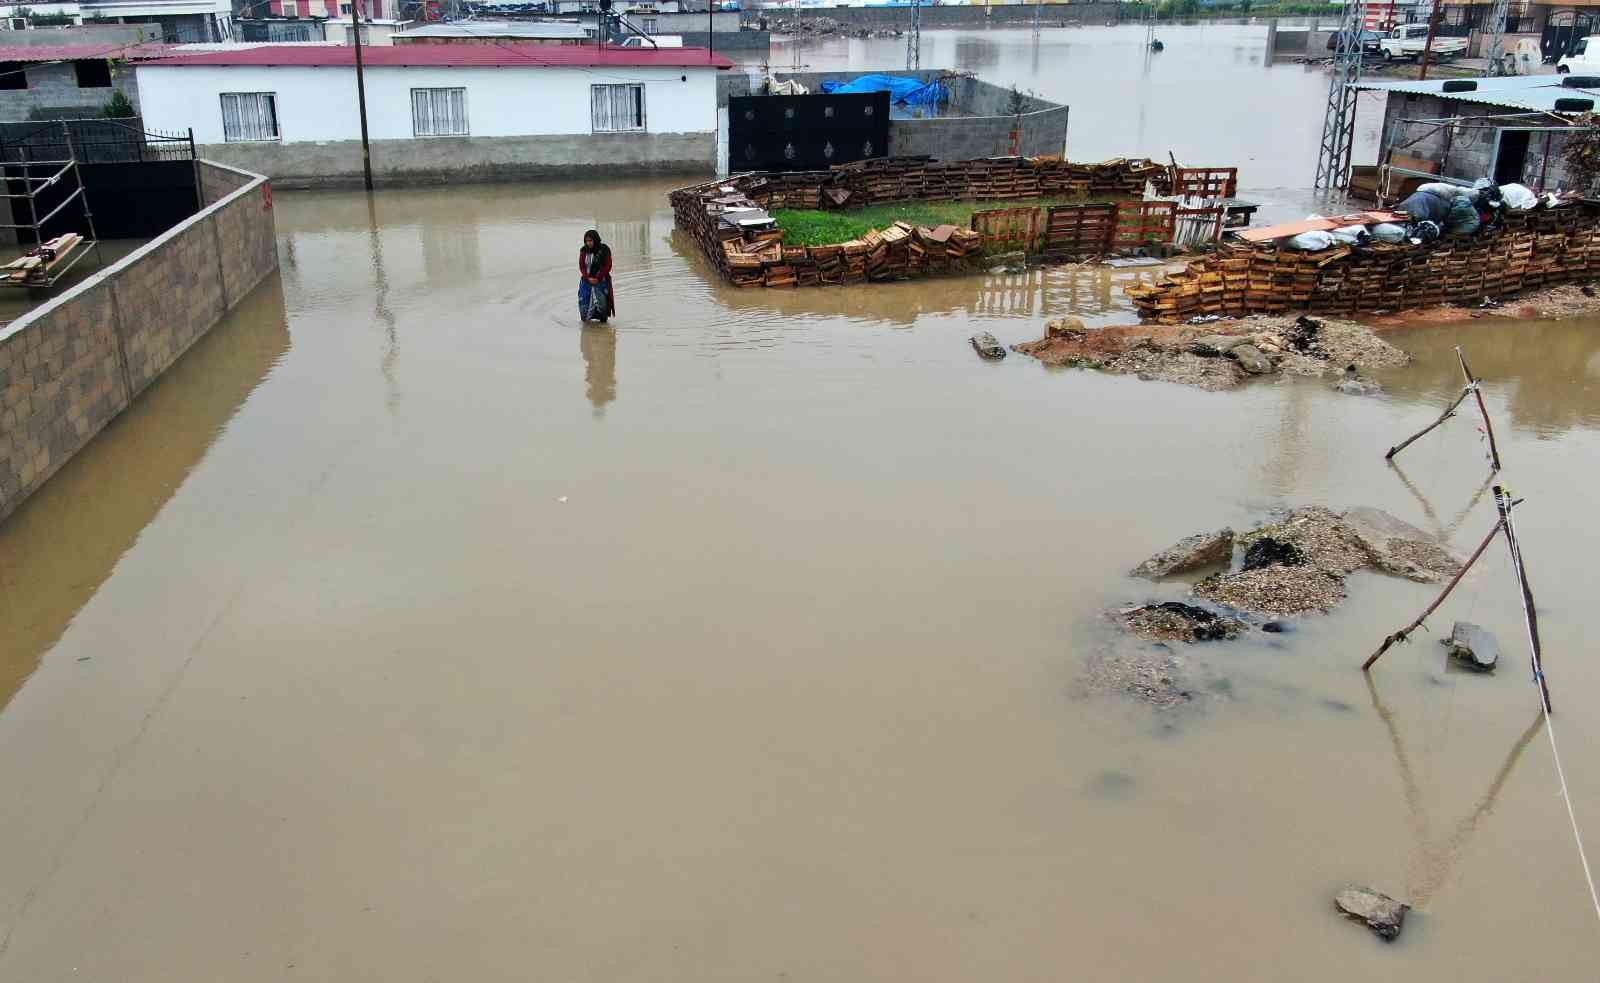 Adana’da yağmur mahalleyi sular altında bıraktı #adana